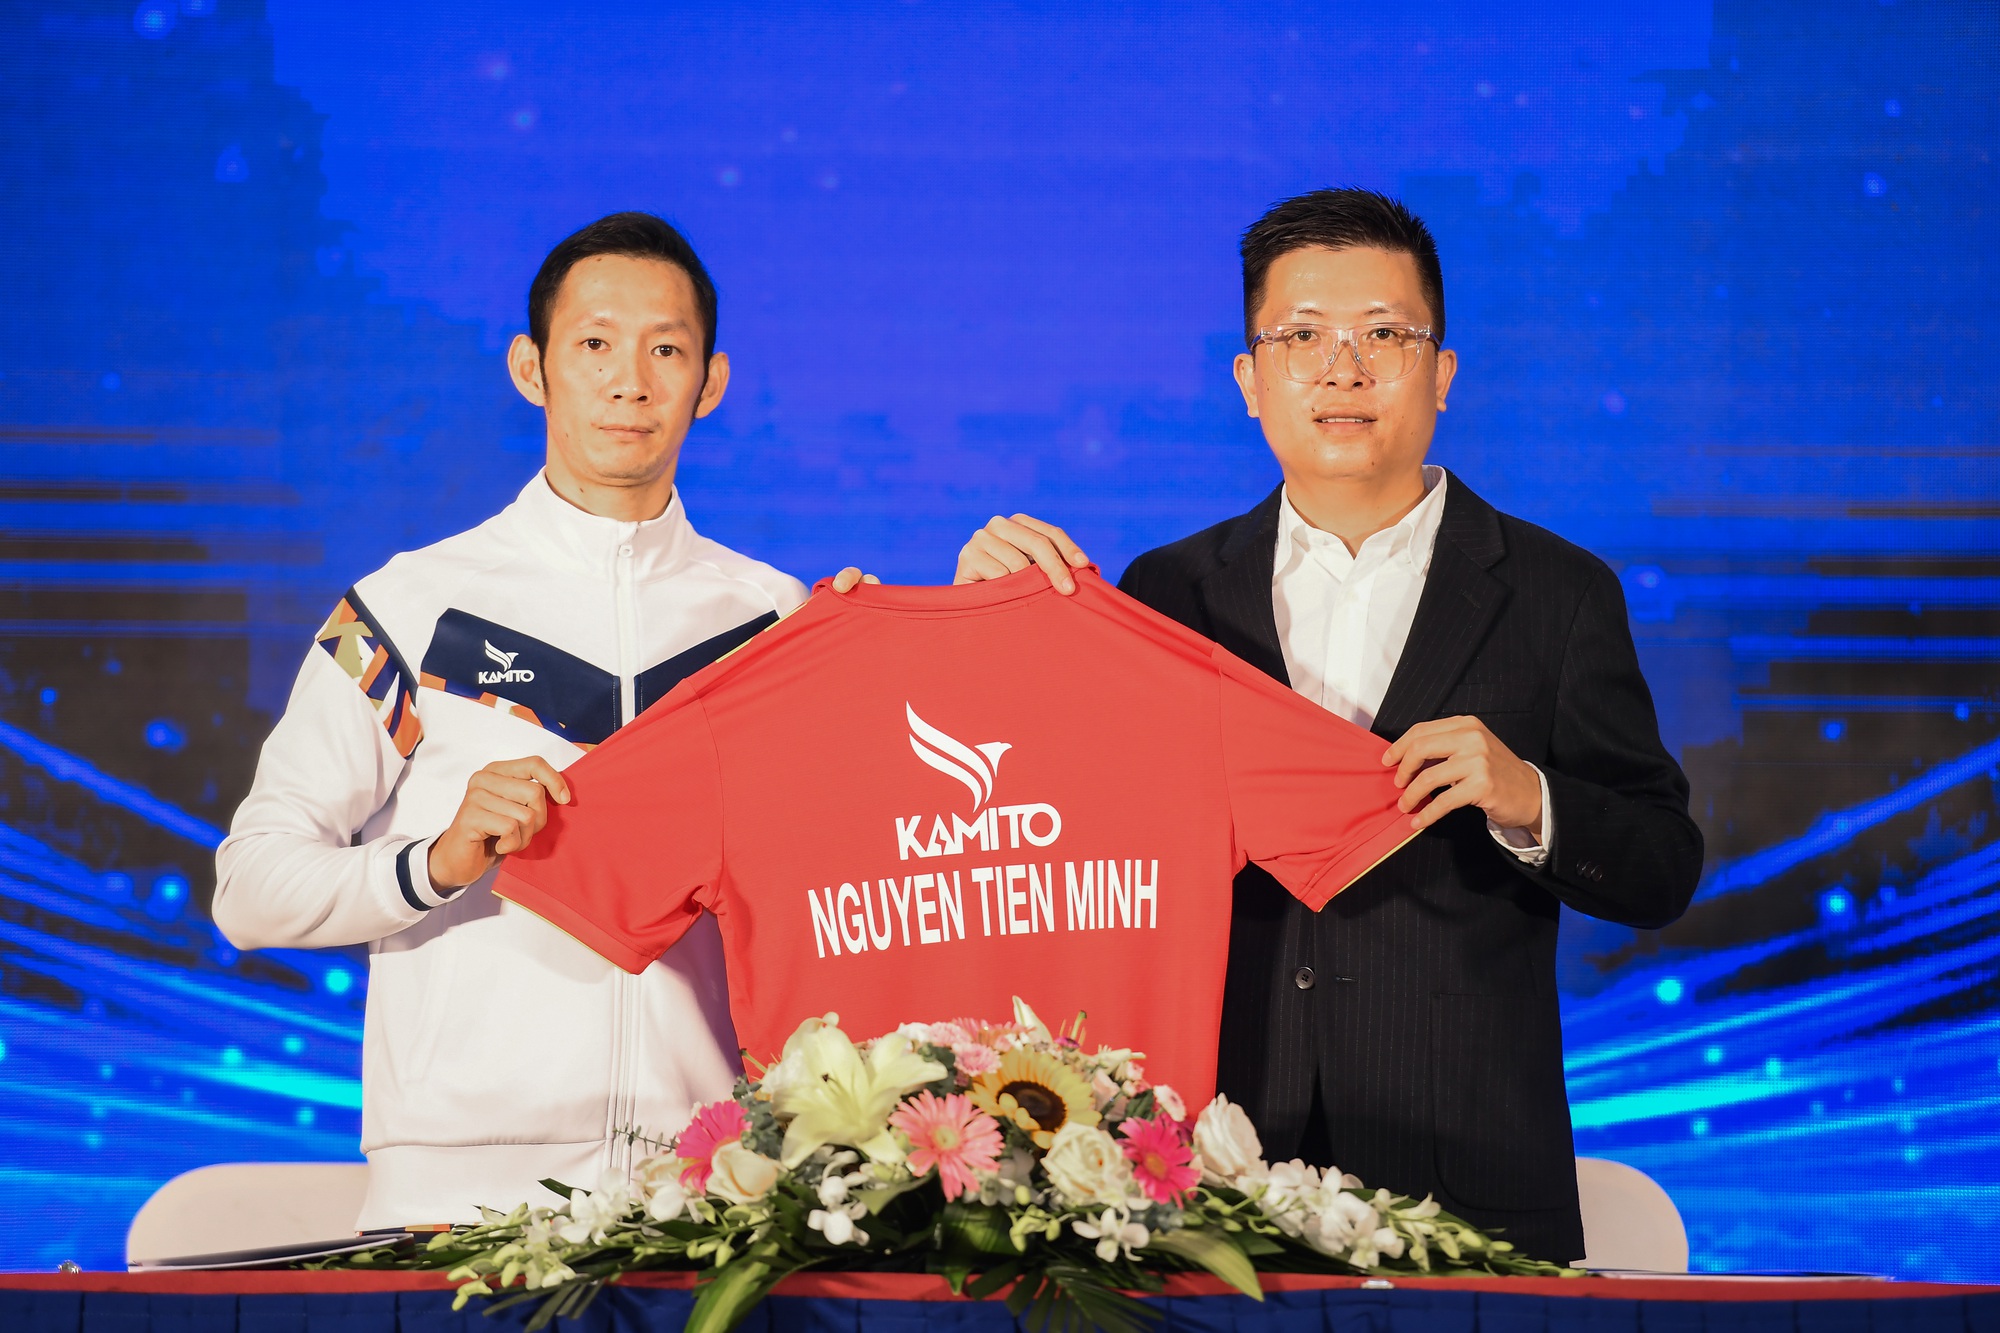 Huyền thoại cầu lông Việt Nam Nguyễn Tiến Minh làm đại sứ thương hiệu Kamito, ra mắt BST TM LEGEND - Ảnh 5.